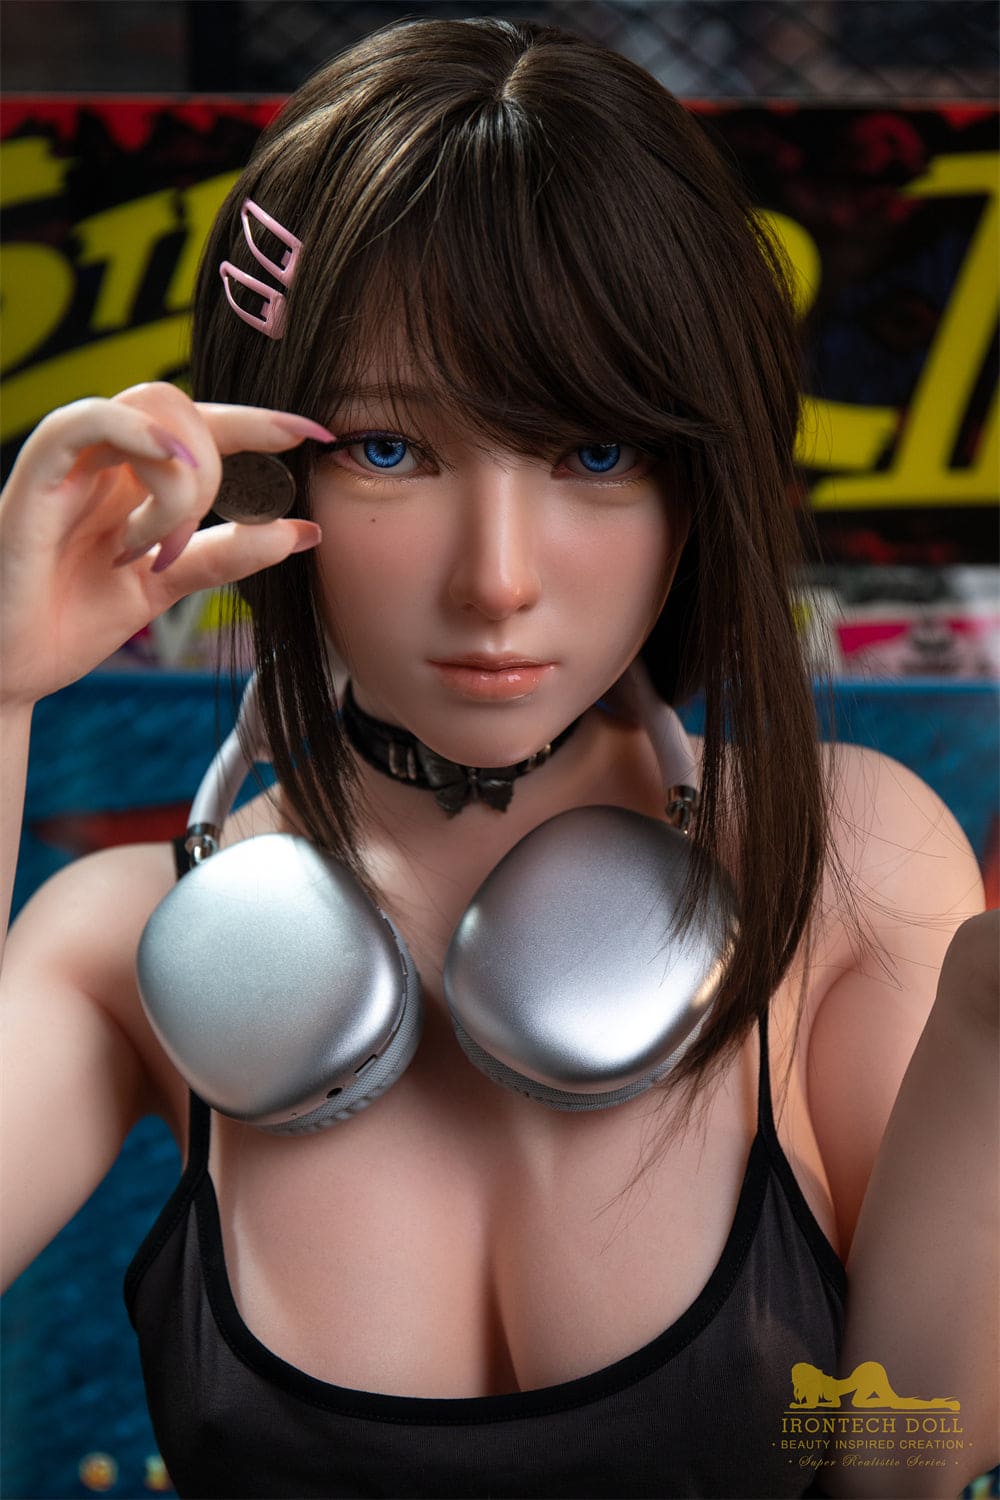 Irontech Premium Ultra realistyczna silikonowa lalka miłosna — Ainsley 164 cm